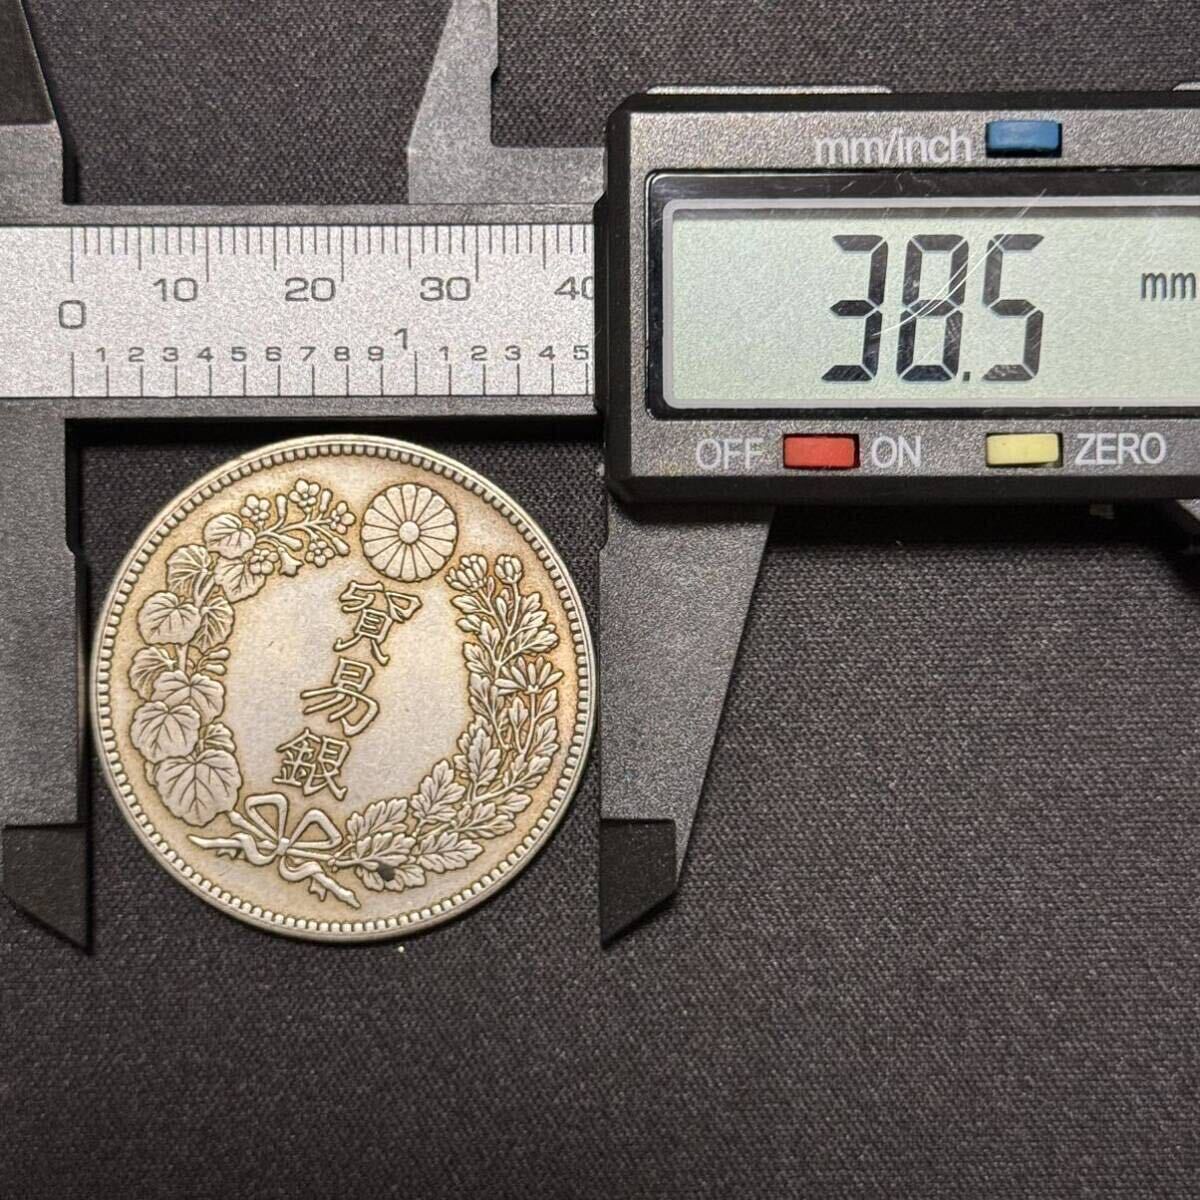 ...  серебро   большой  Япония  1...  серебряная монета    дракон    старинная монета    монета   1  йен  серебряная монета    большой размер  серебряная монета    монета   период Мейдзи 8 год 